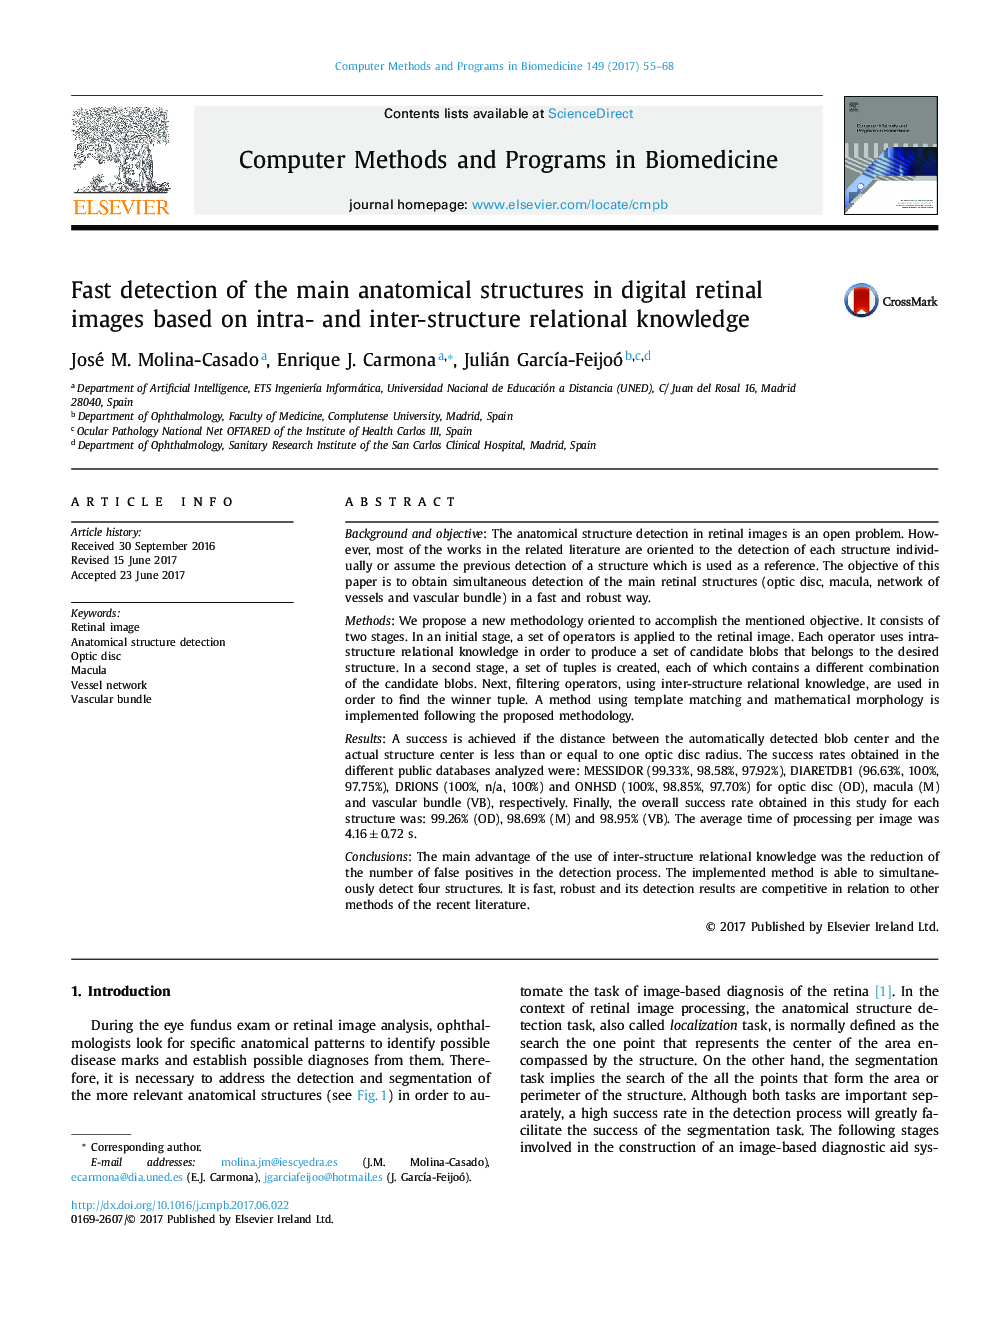 تشخیص سریع ساختارهای آناتومیک اصلی در تصاویر شبکیه دیجیتال بر اساس دانش ارتباطی درونی و بین سازمانی 